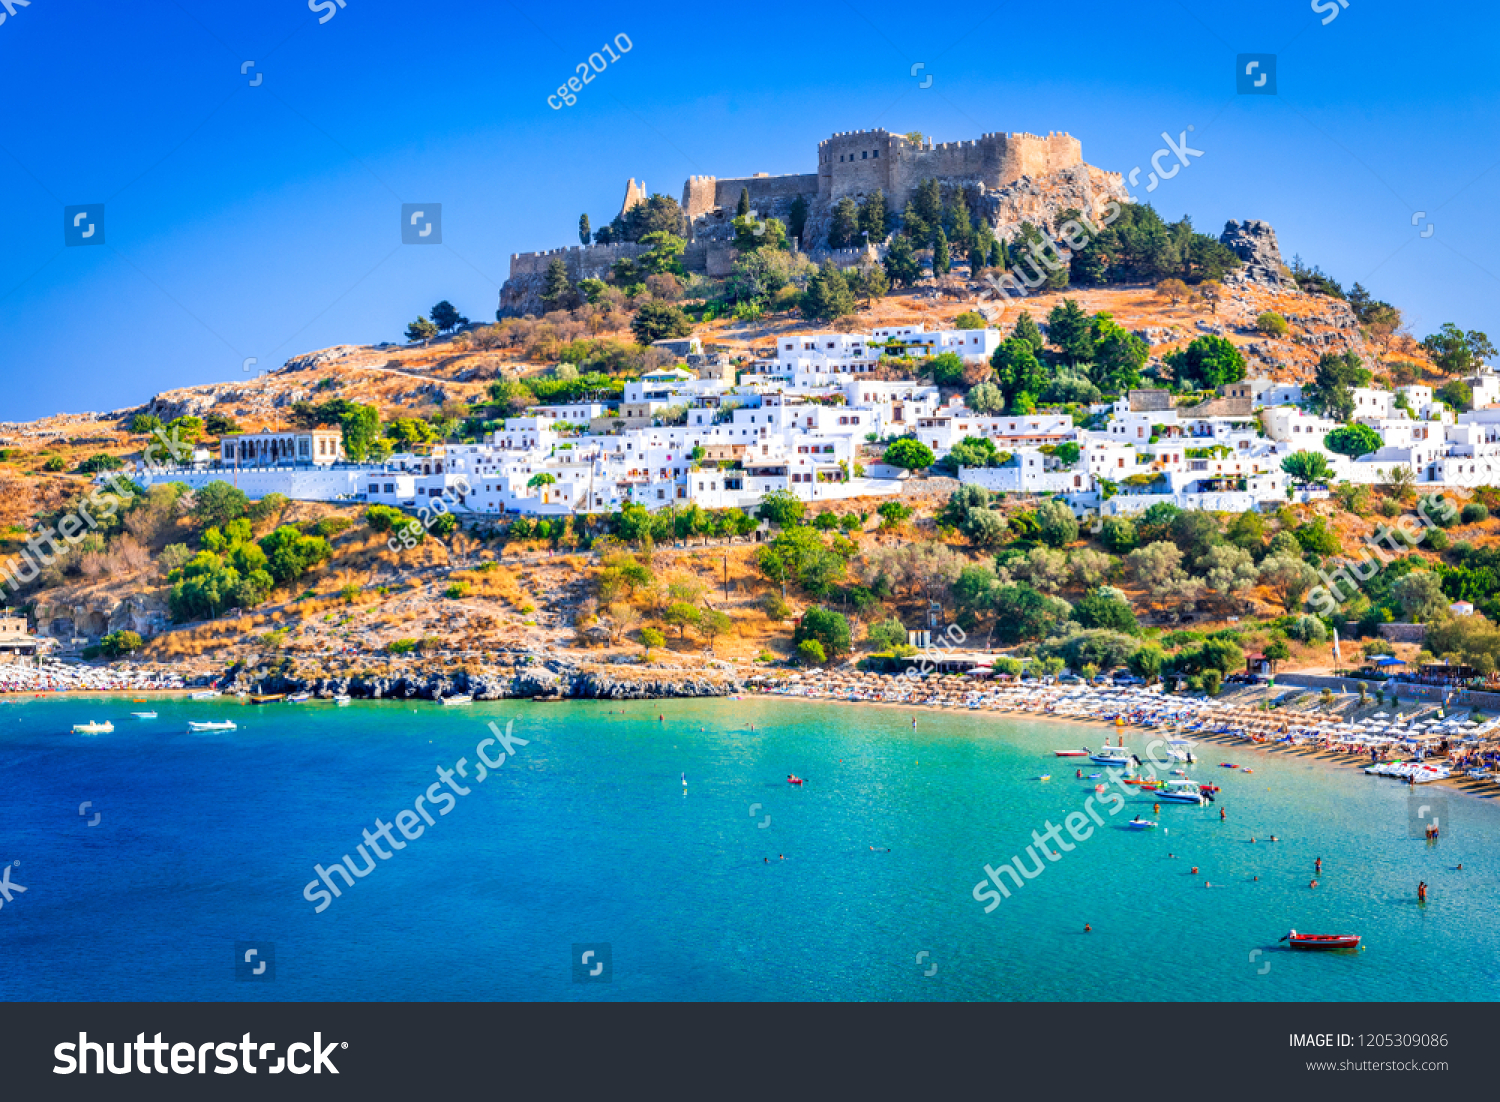 ギリシャ ロードス リンドスの小さな白塗りの村とアクロポリス エーゲ海のロドス島の風景 の写真素材 今すぐ編集